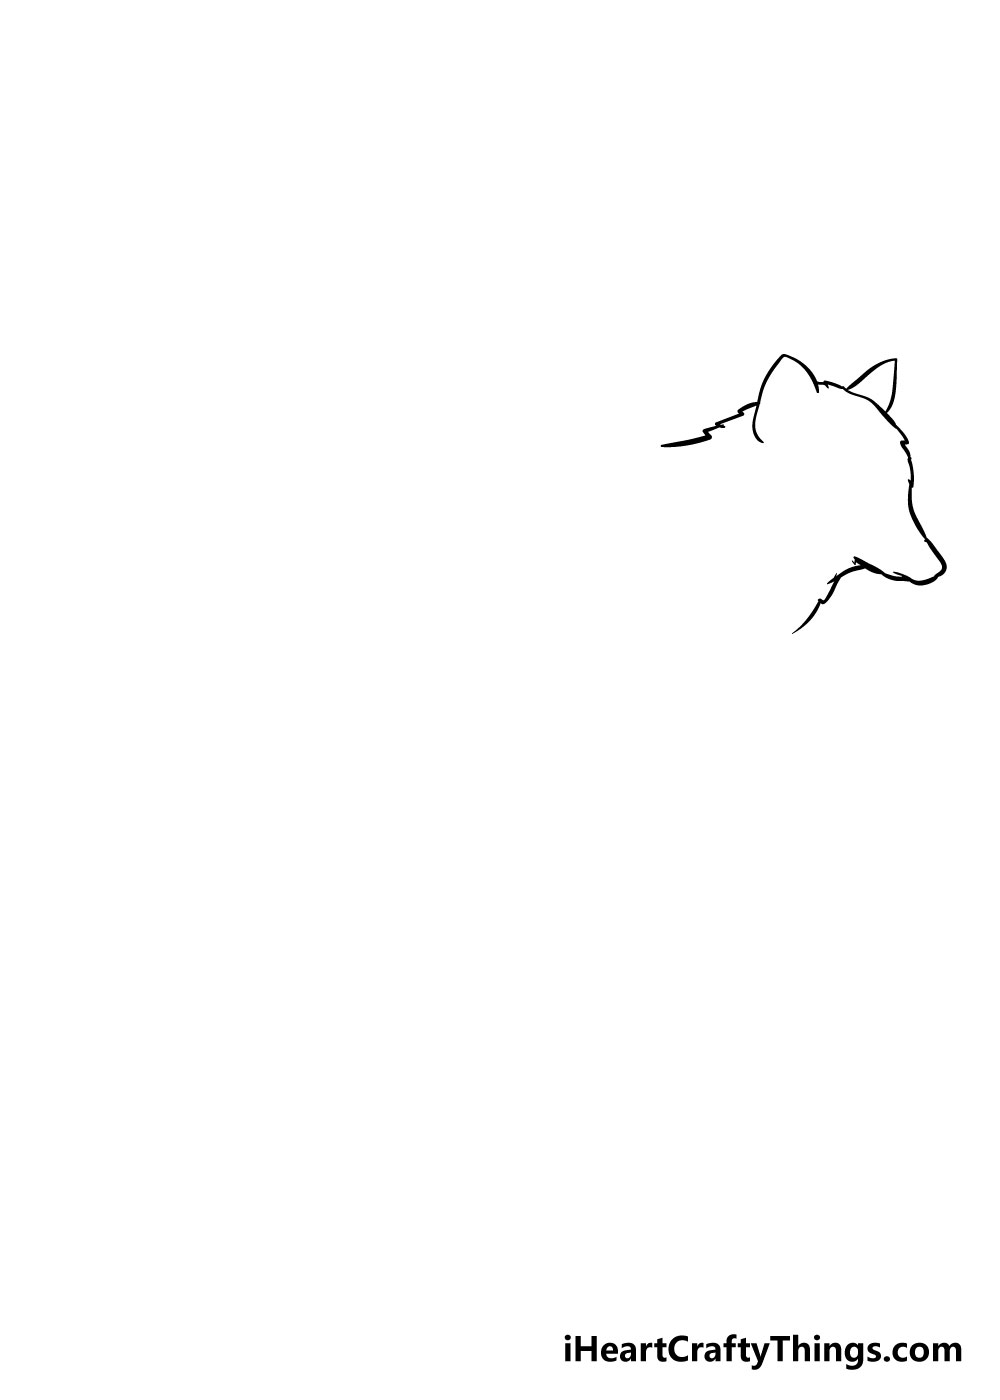 How to draw Wolf 1 - Hướng dẫn cách vẽ con chó sói đơn giản với 6 bước cơ bản